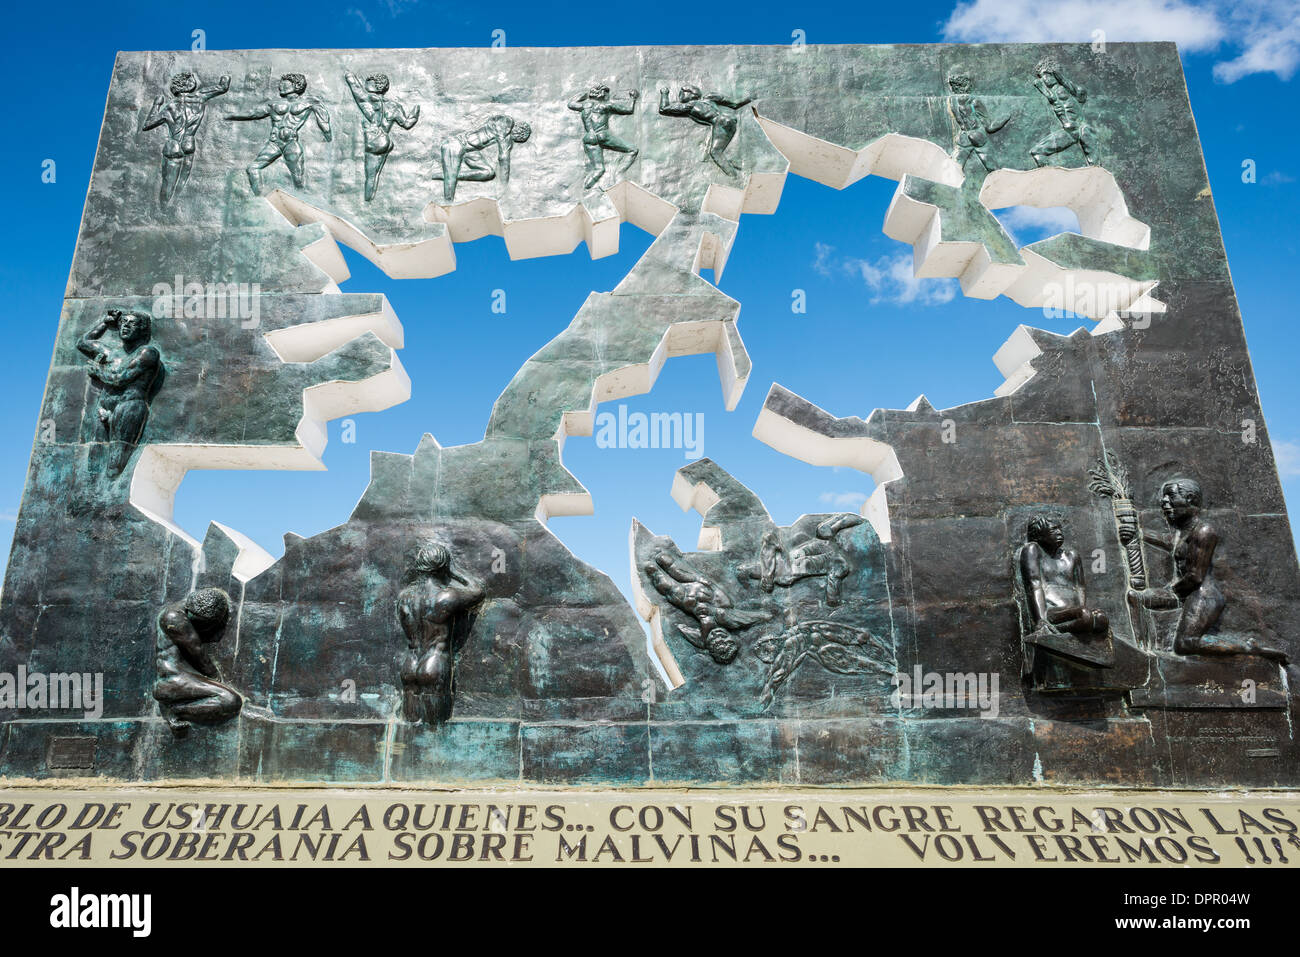 USHUAIA, Argentine - Un mémorial de la guerre des îles Falklands (connue sous le nom de Guerra de las Malvinas en Argentine) entre la Grande-Bretagne et l'Argentine à Ushuaia. Niché à l'extrémité sud de l'Amérique du Sud, Ushuaia est connue comme la ville la plus méridionale du monde. Surplombant le canal Beagle et entouré par les montagnes martiales enneigées, cet emplacement unique sert de passerelle vers l'Antarctique, attirant des aventuriers du monde entier. Banque D'Images